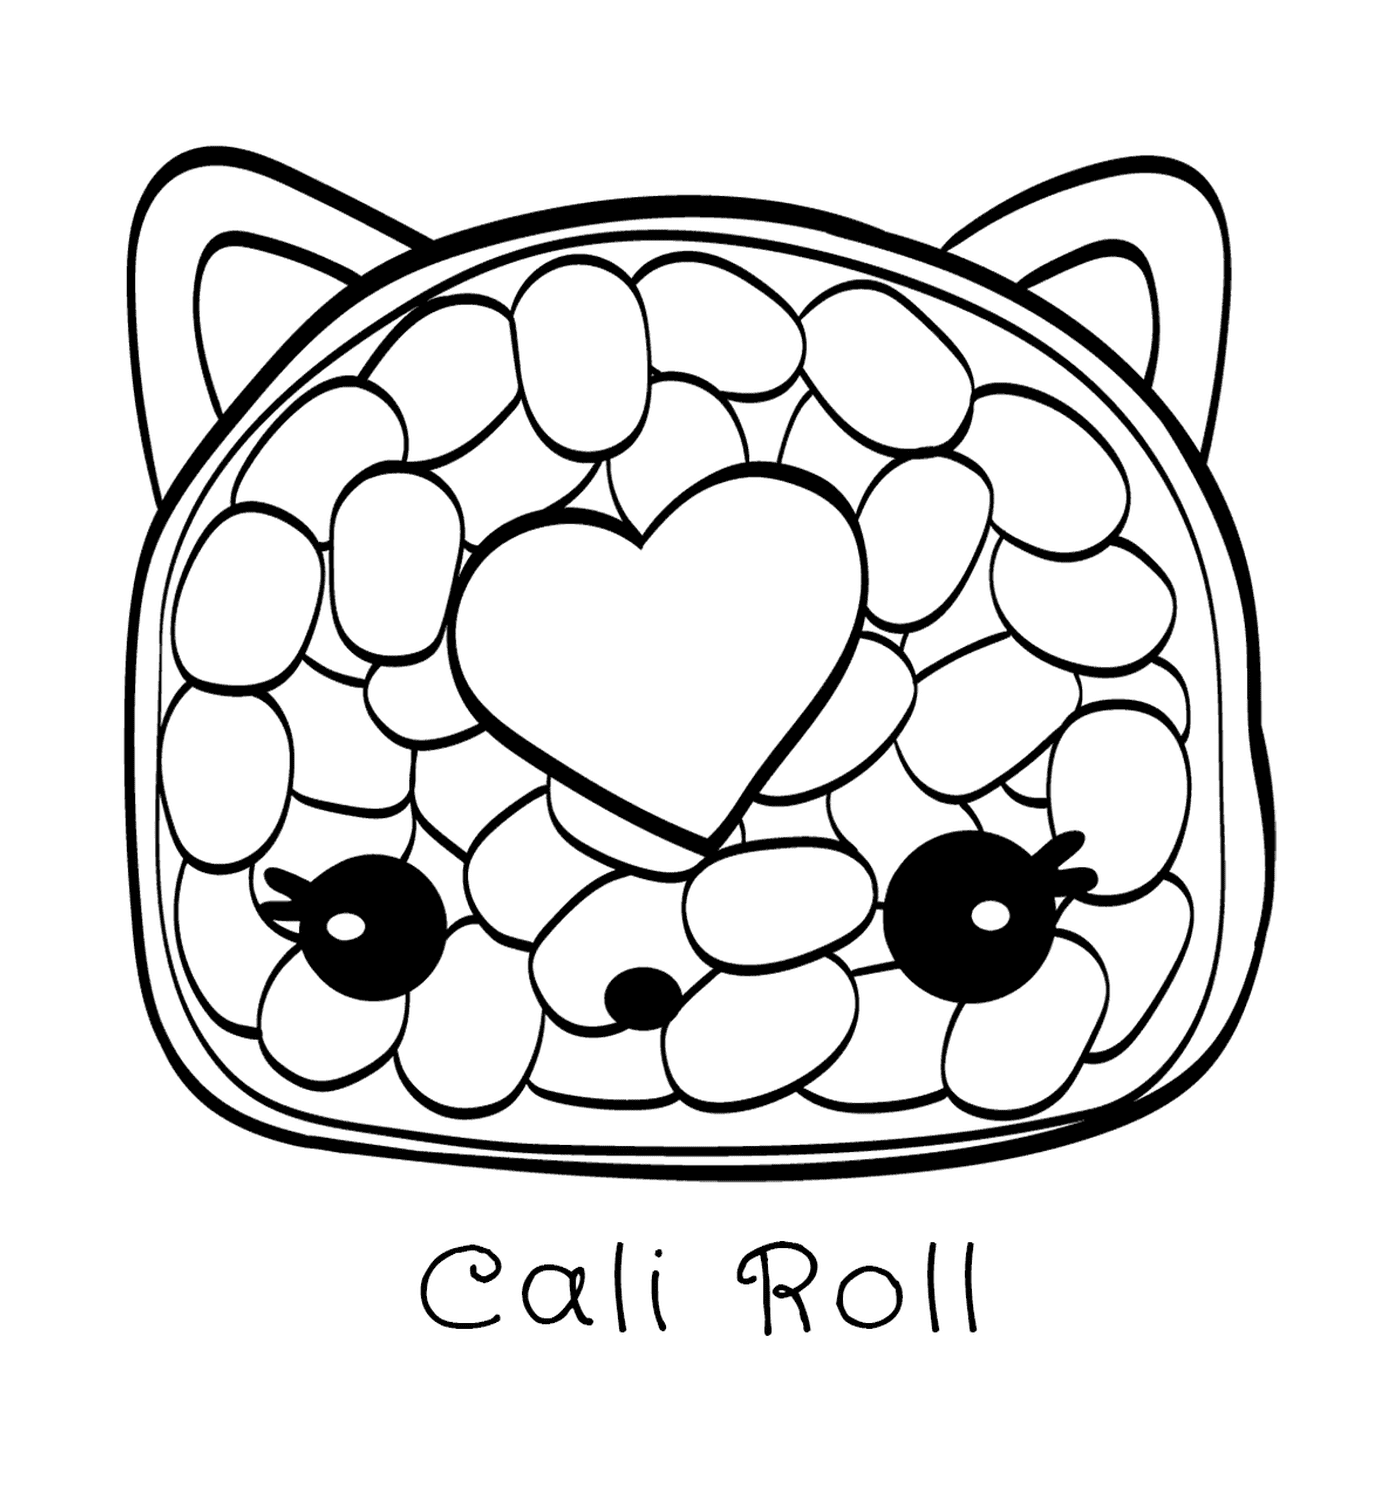  Kali Roll, a treat 